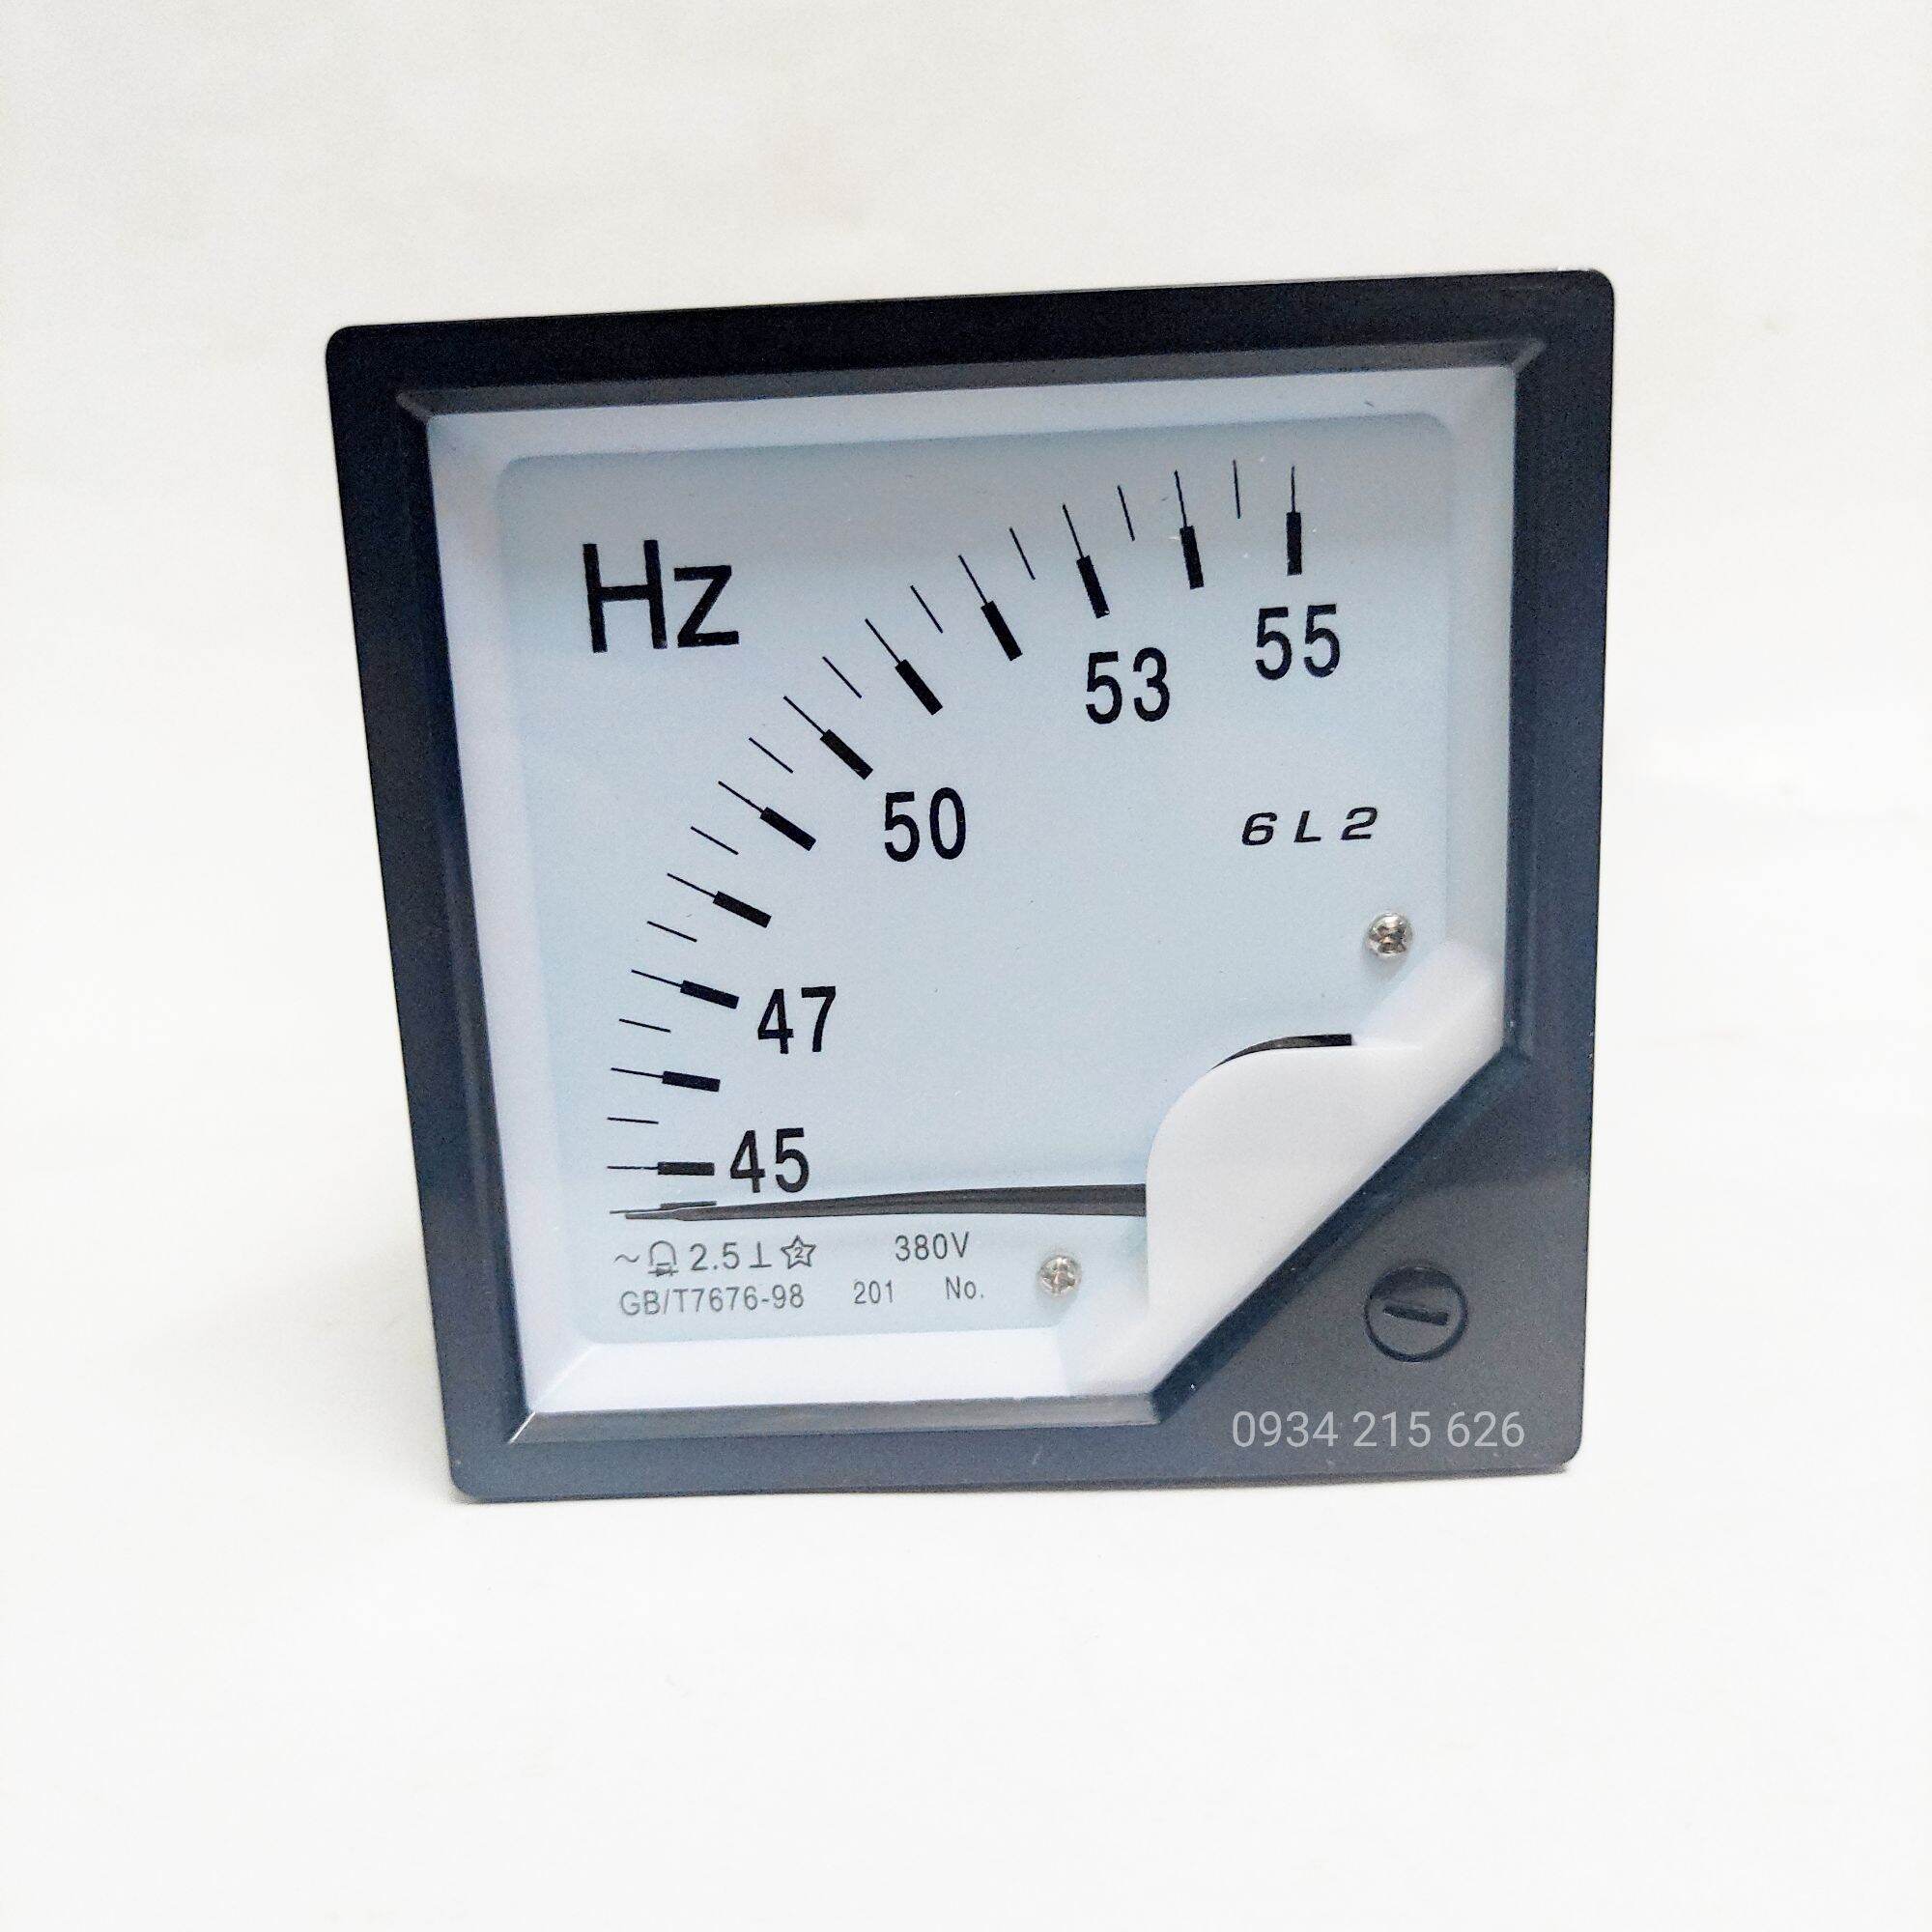 Đồng hồ đo tần số HZ- 6L2